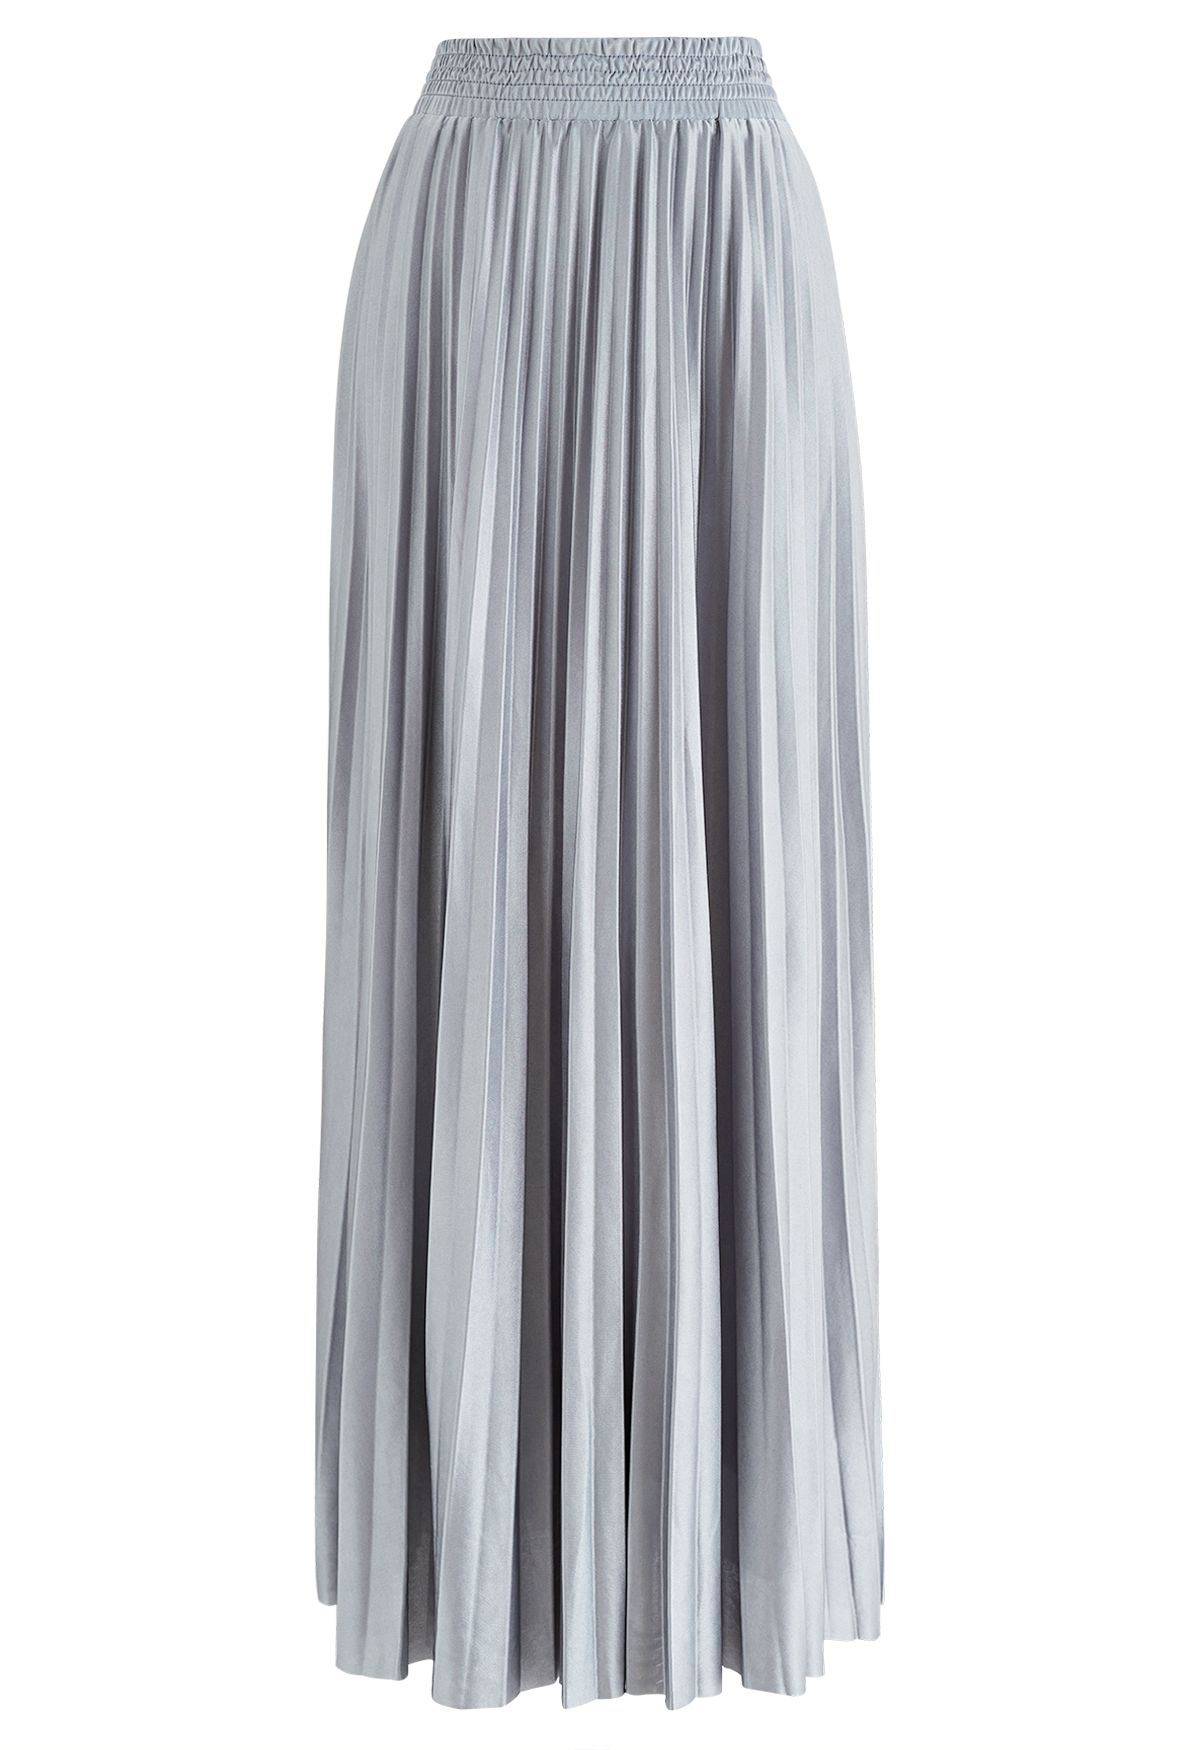 Falda larga plisada brillante en gris